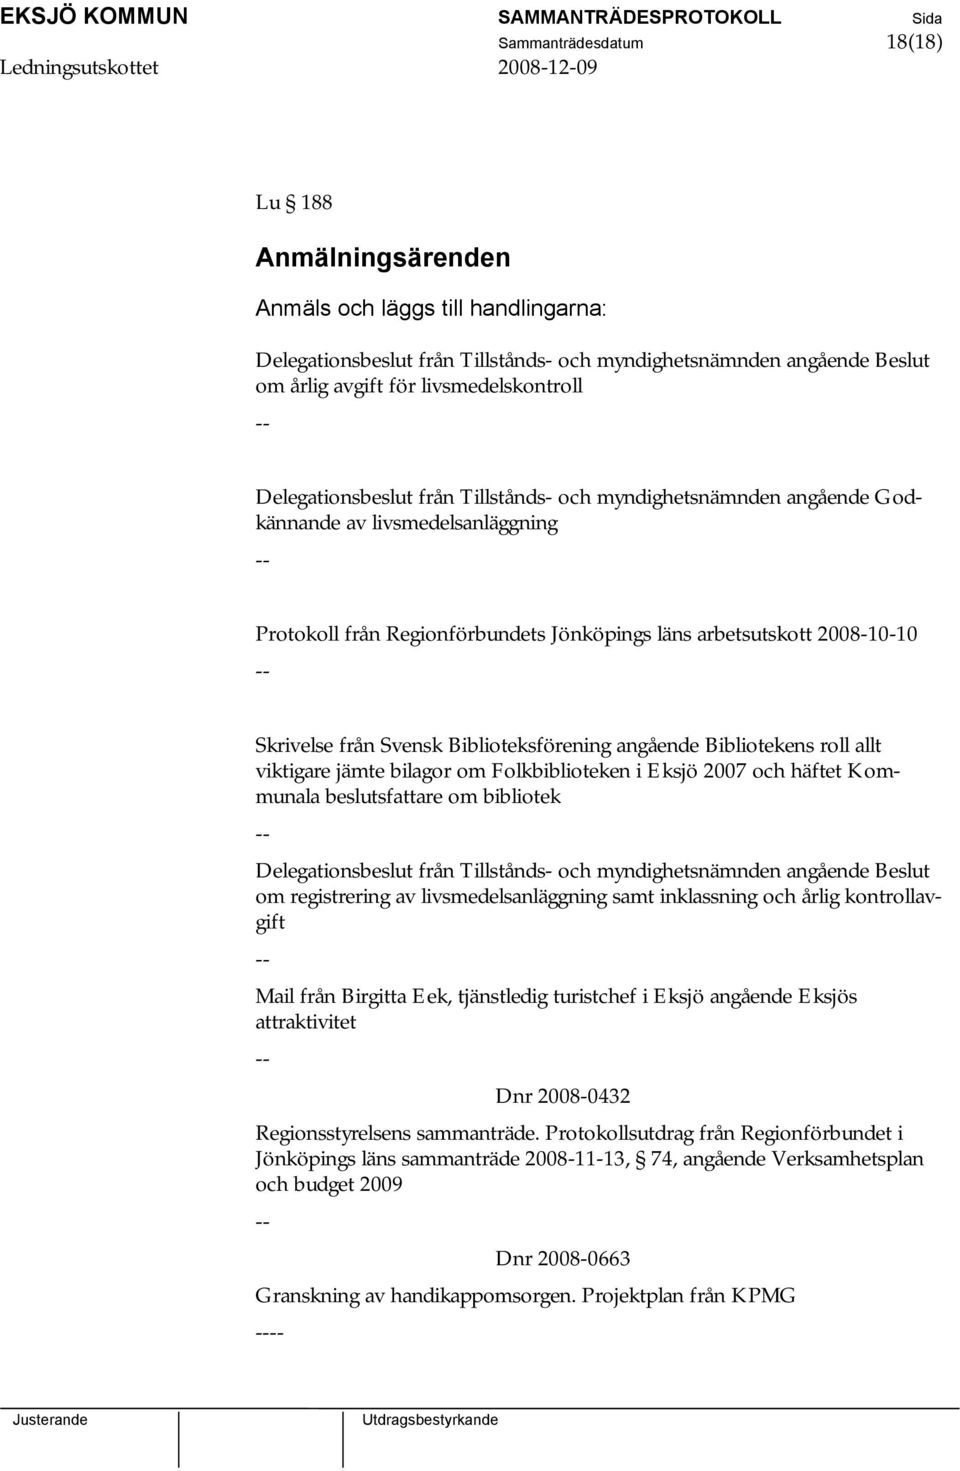 Svensk Biblioteksförening angående Bibliotekens roll allt viktigare jämte bilagor om Folkbiblioteken i Eksjö 2007 och häftet Kommunala beslutsfattare om bibliotek -- Delegationsbeslut från